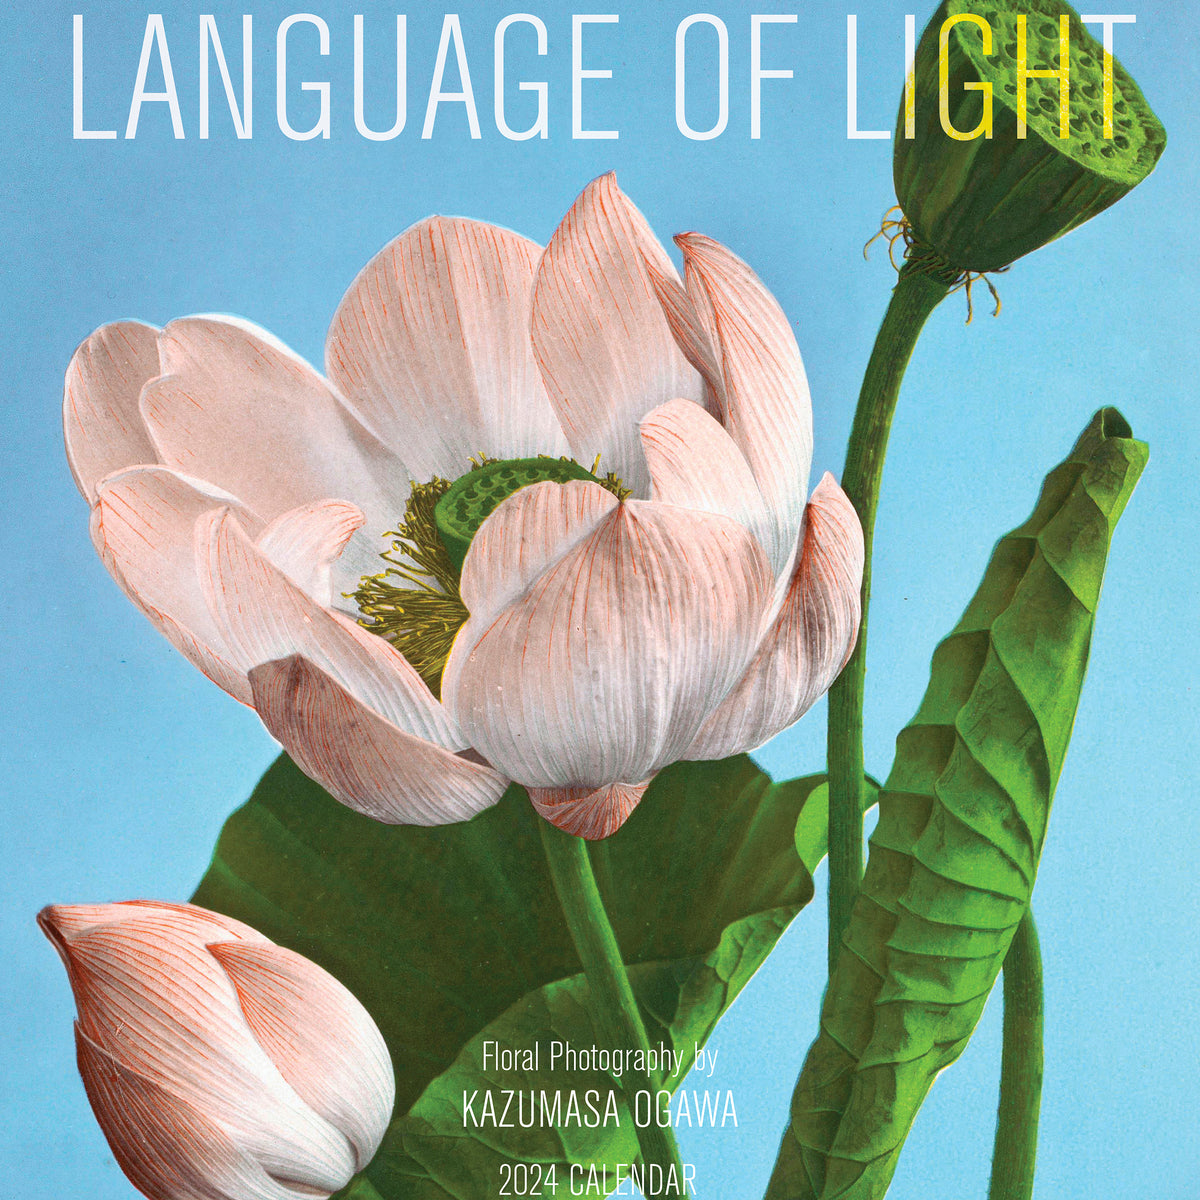 Language of light